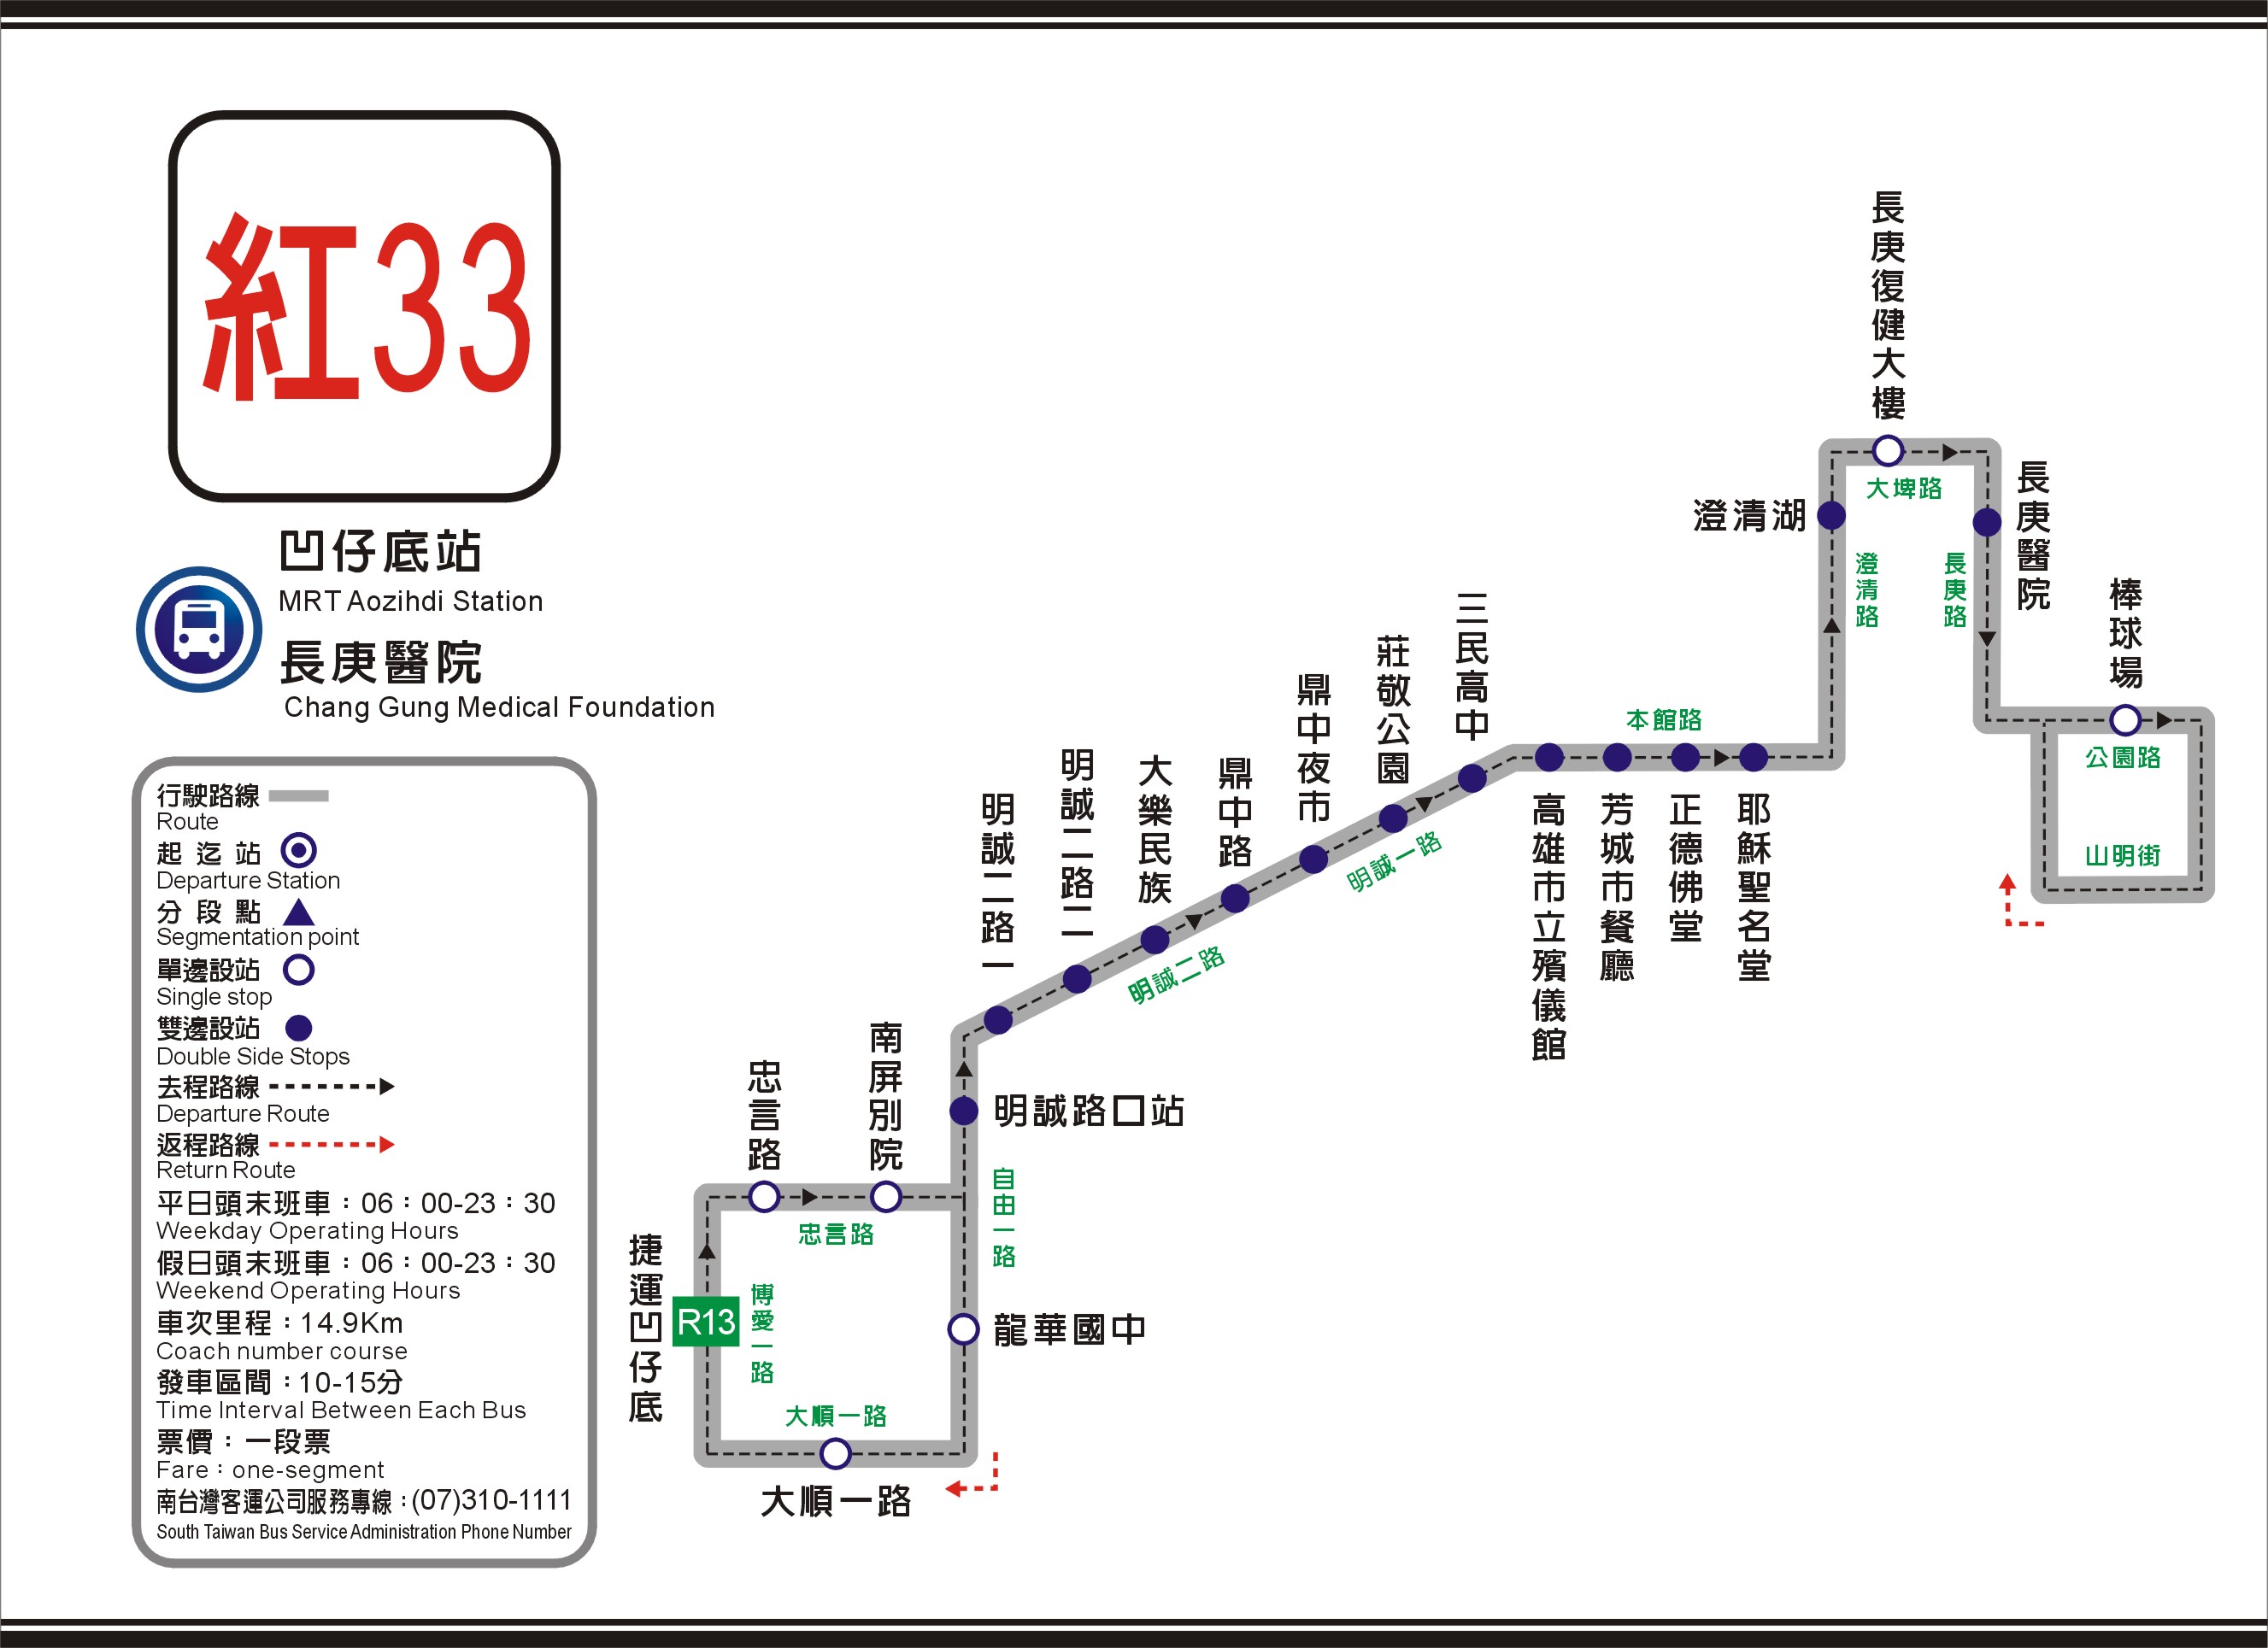 R33 route mpe